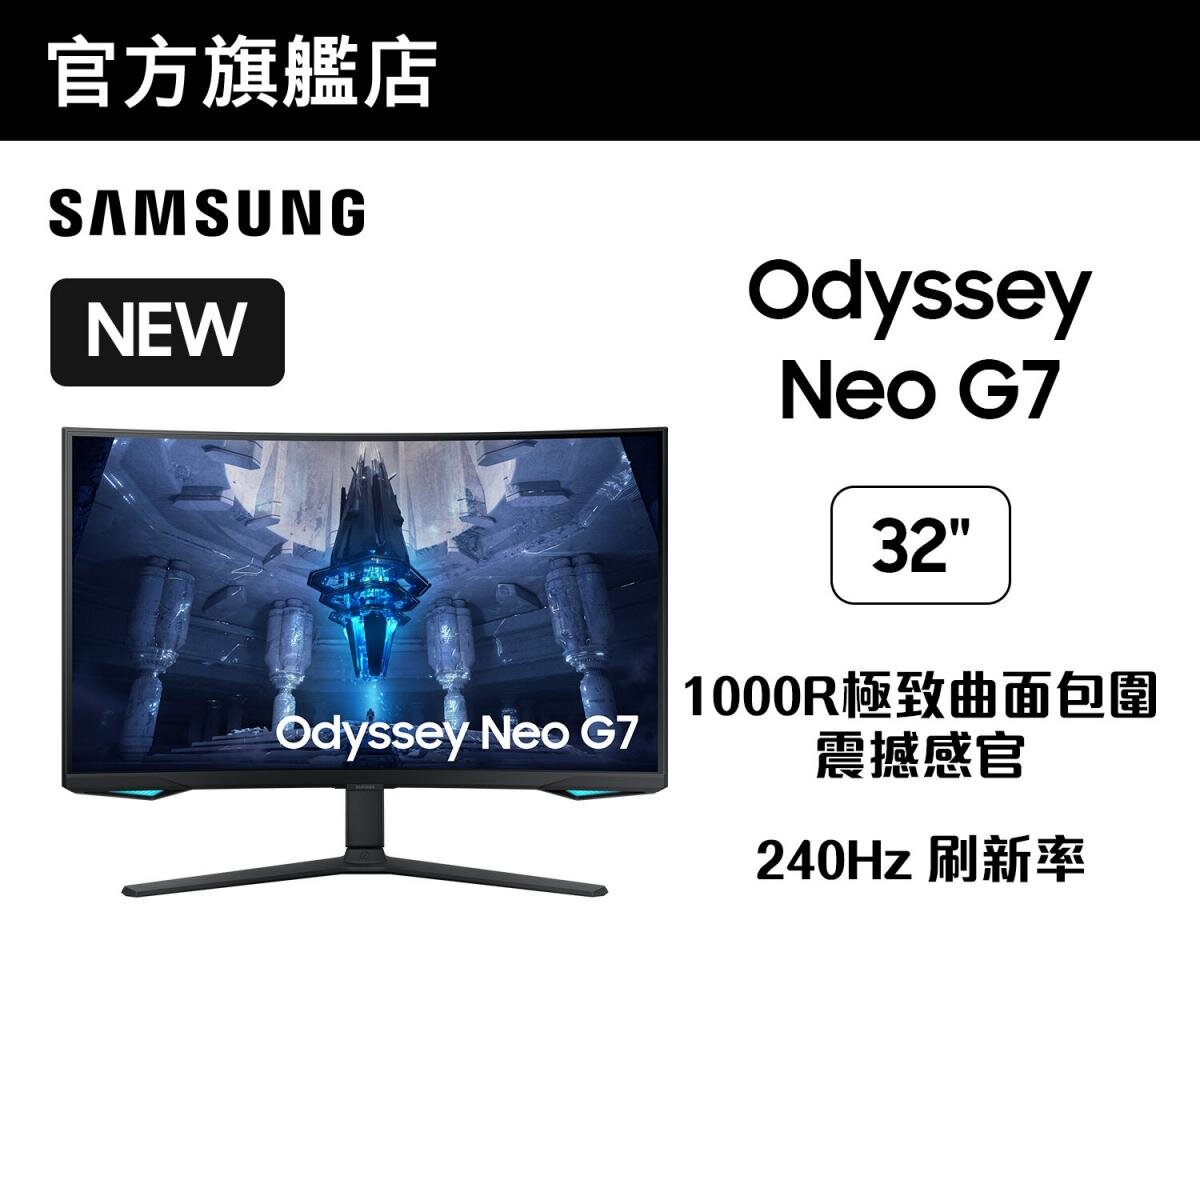 32” Odyssey Neo G7 Mini-LED Curved Gaming Monitor (165Hz) LS32BG750NCXXK 32G7